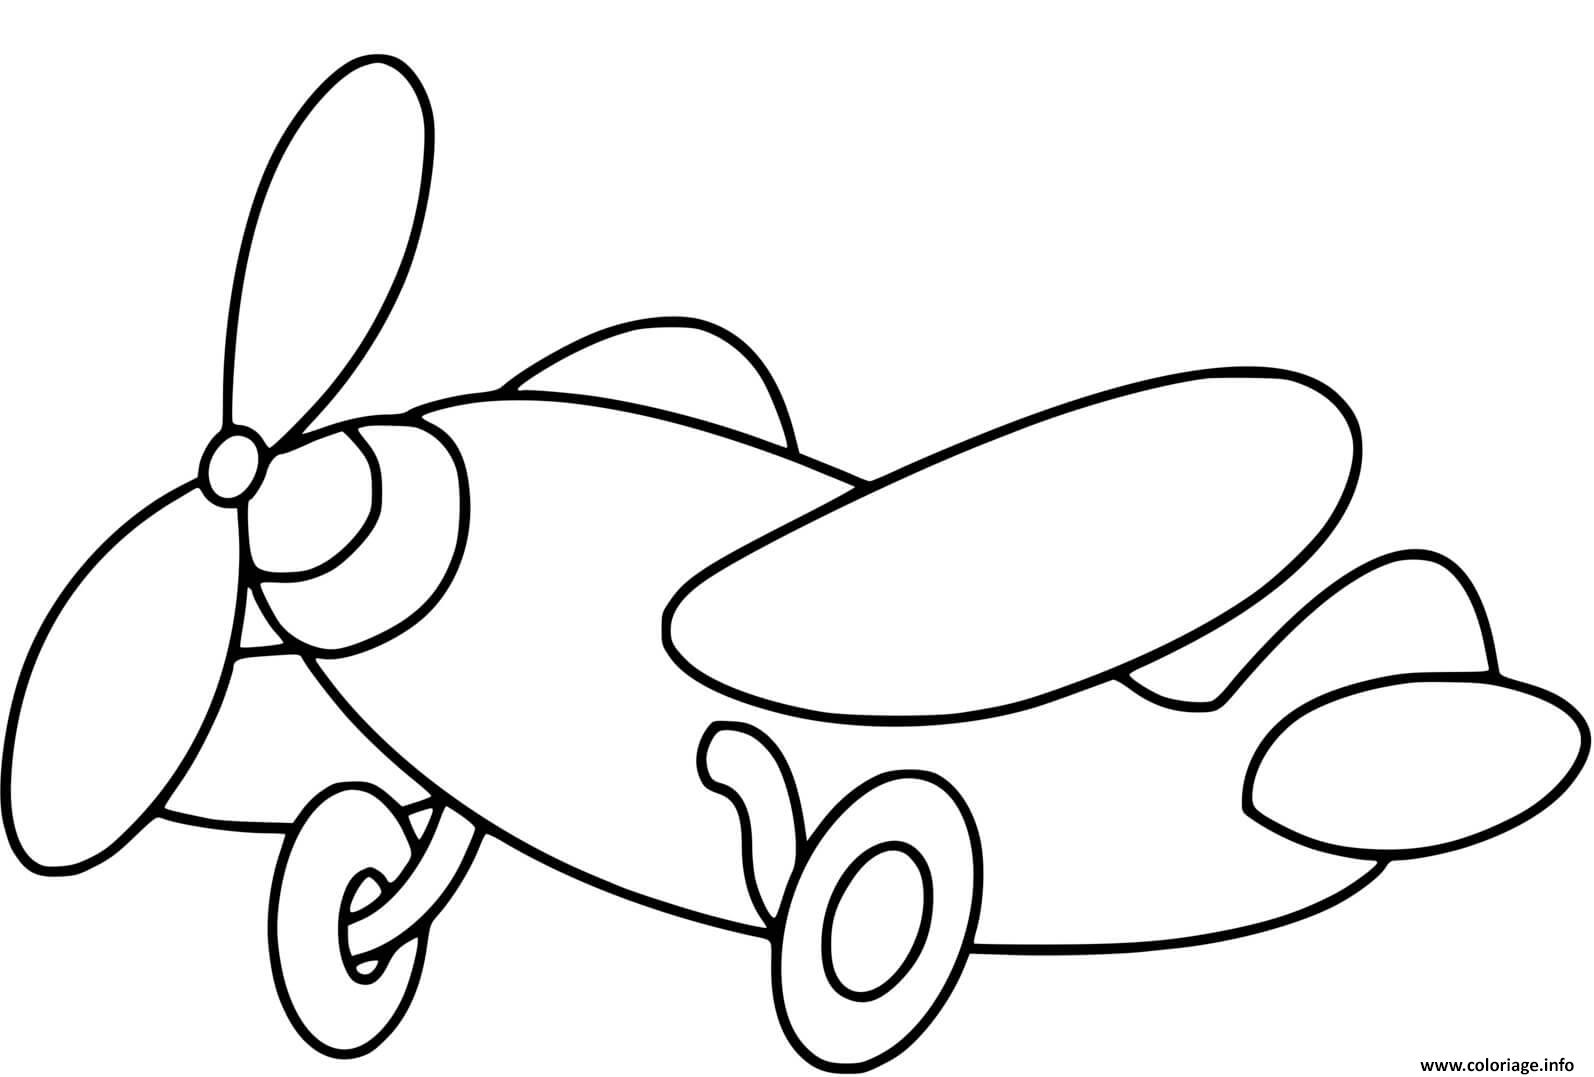 Dessin avion maternelle pour enfant Coloriage Gratuit à Imprimer